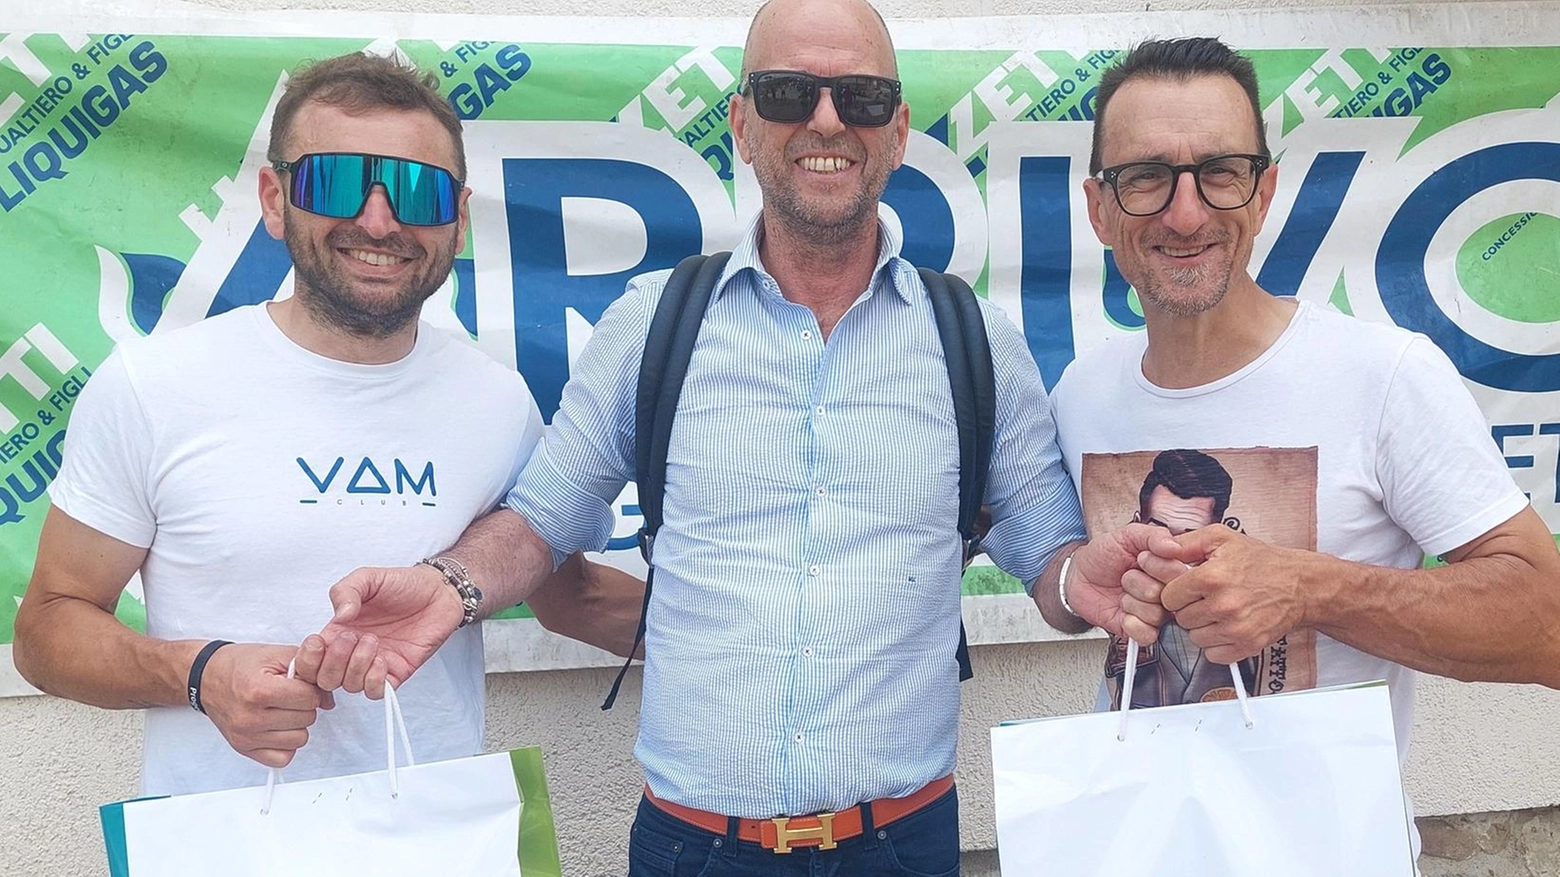 Vincenzo Borzi e Federico Colonna vincono il Trofeo Gualtiero Luzzetti, corsa amatoriale di ciclismo Uisp con 107 partecipanti. Borzi trionfa in volata, Colonna nella seconda partenza.